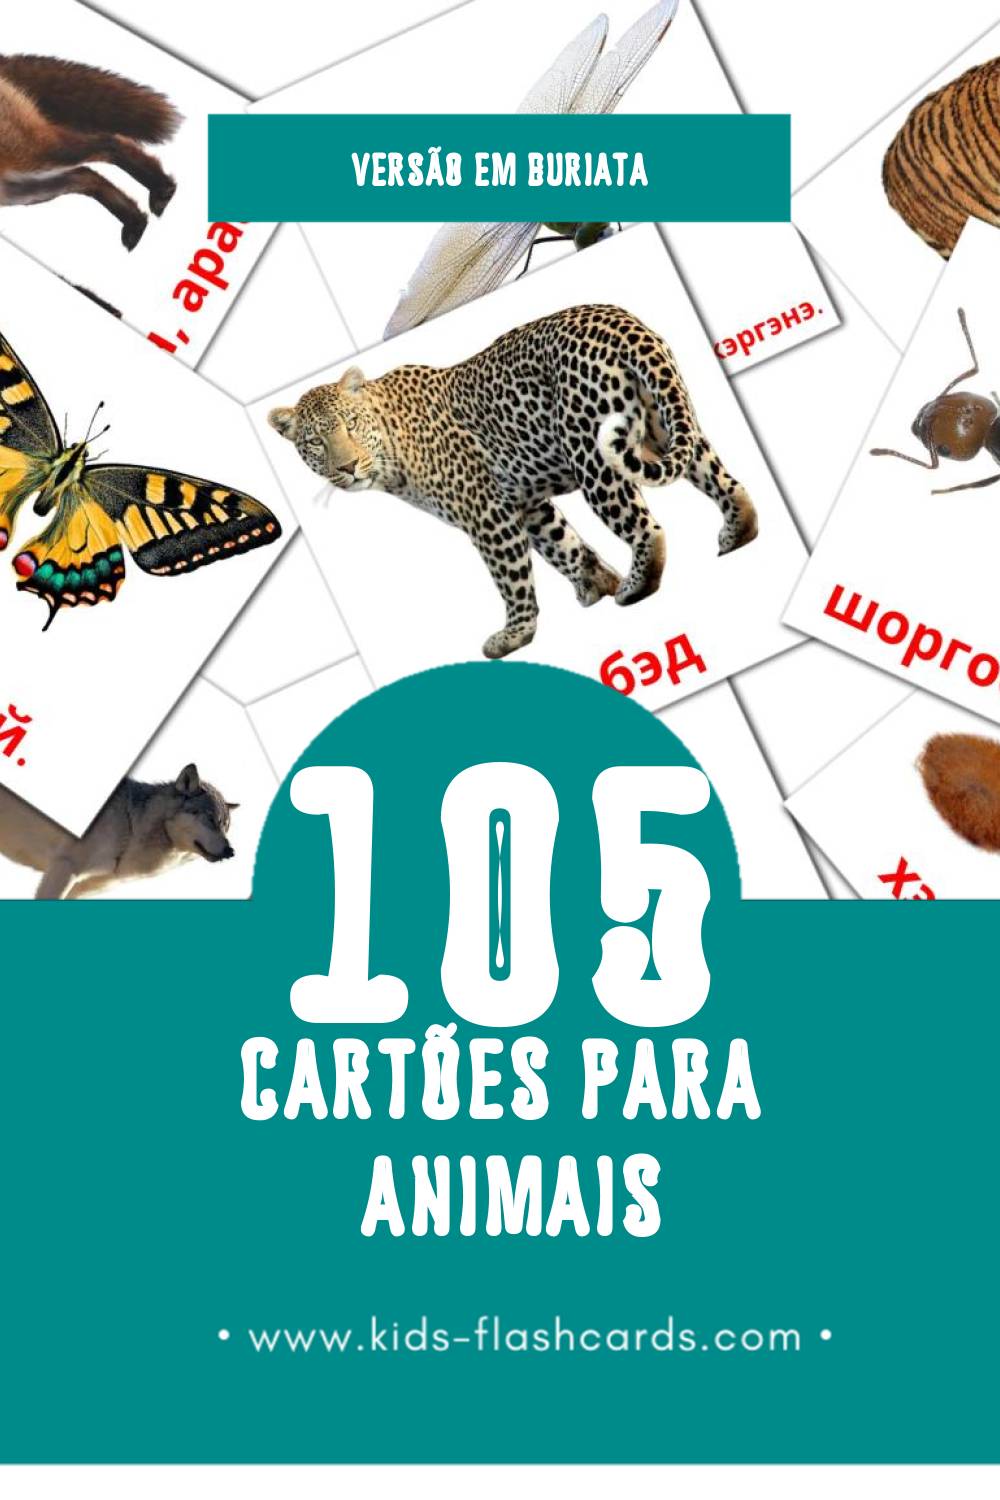 Flashcards de Амитан Visuais para Toddlers (105 cartões em Buriata)